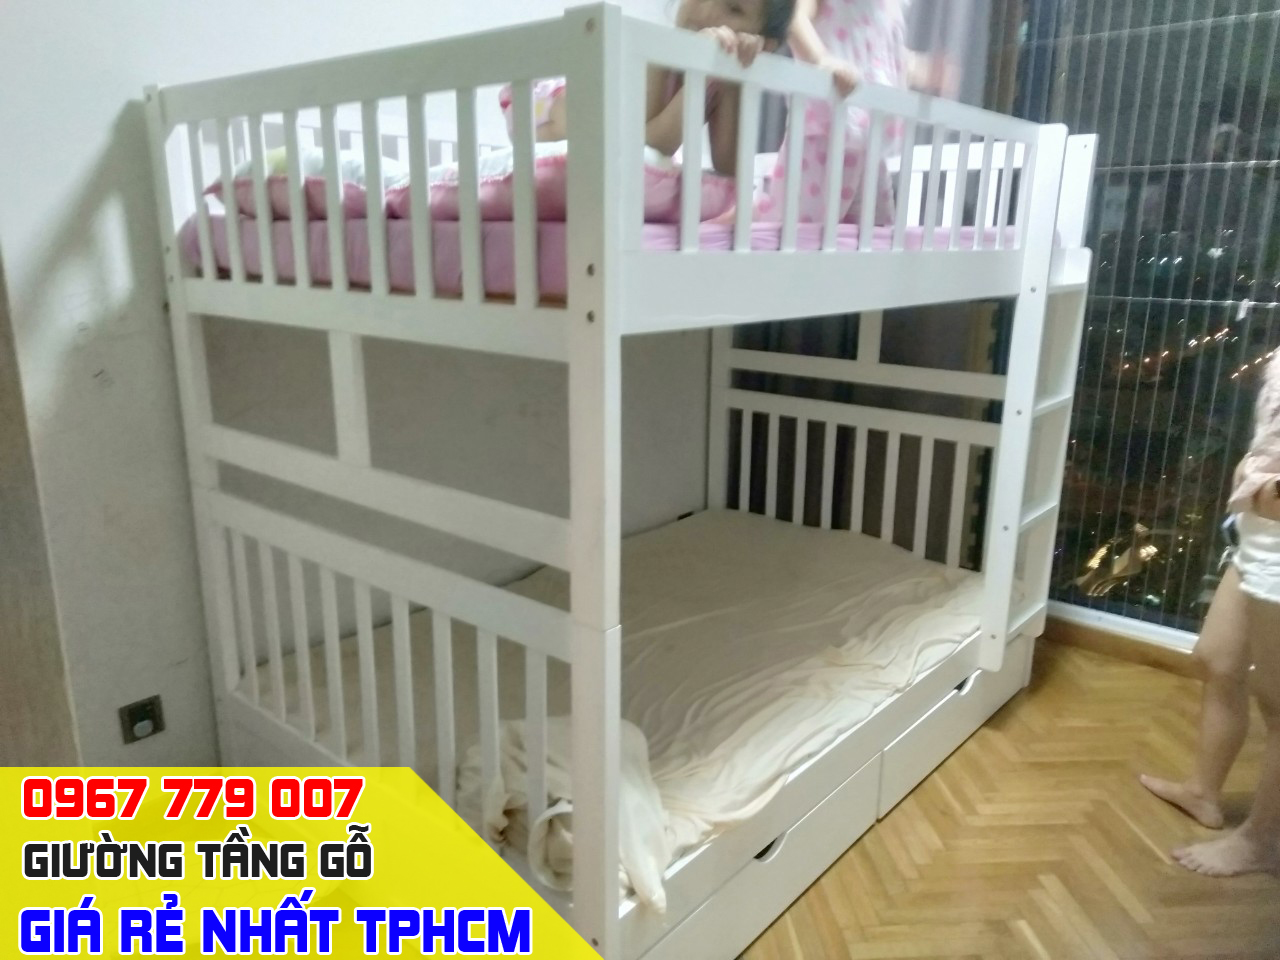 CH bán giường tầng trẻ em giá rẻ uy tín nhất Quận Gò Vấp TPHCM 11